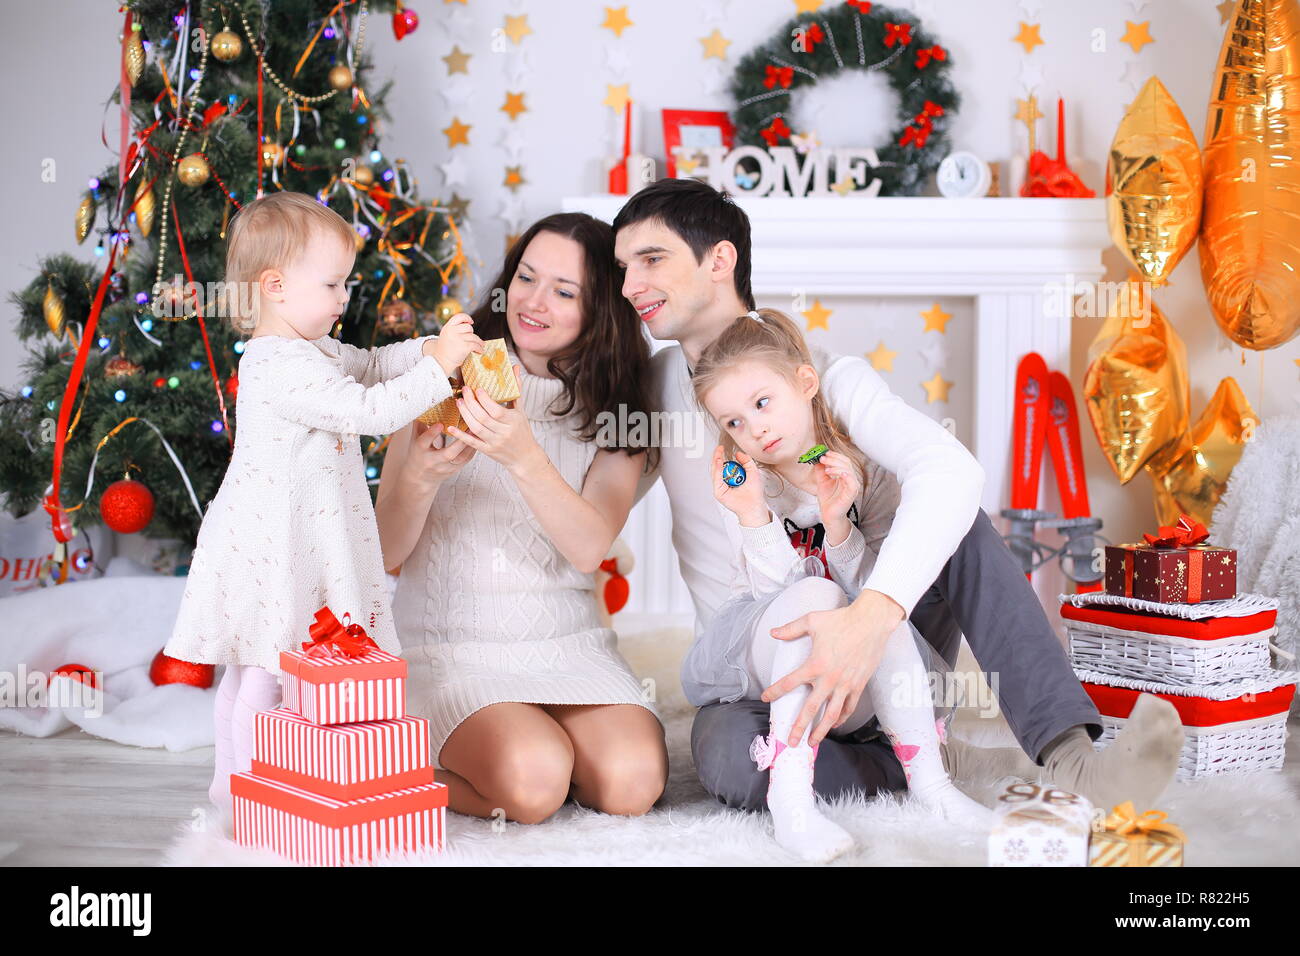 Frohe Weihnachten feiern. Schöne Familie. Weihnachten Wunder Stockfoto